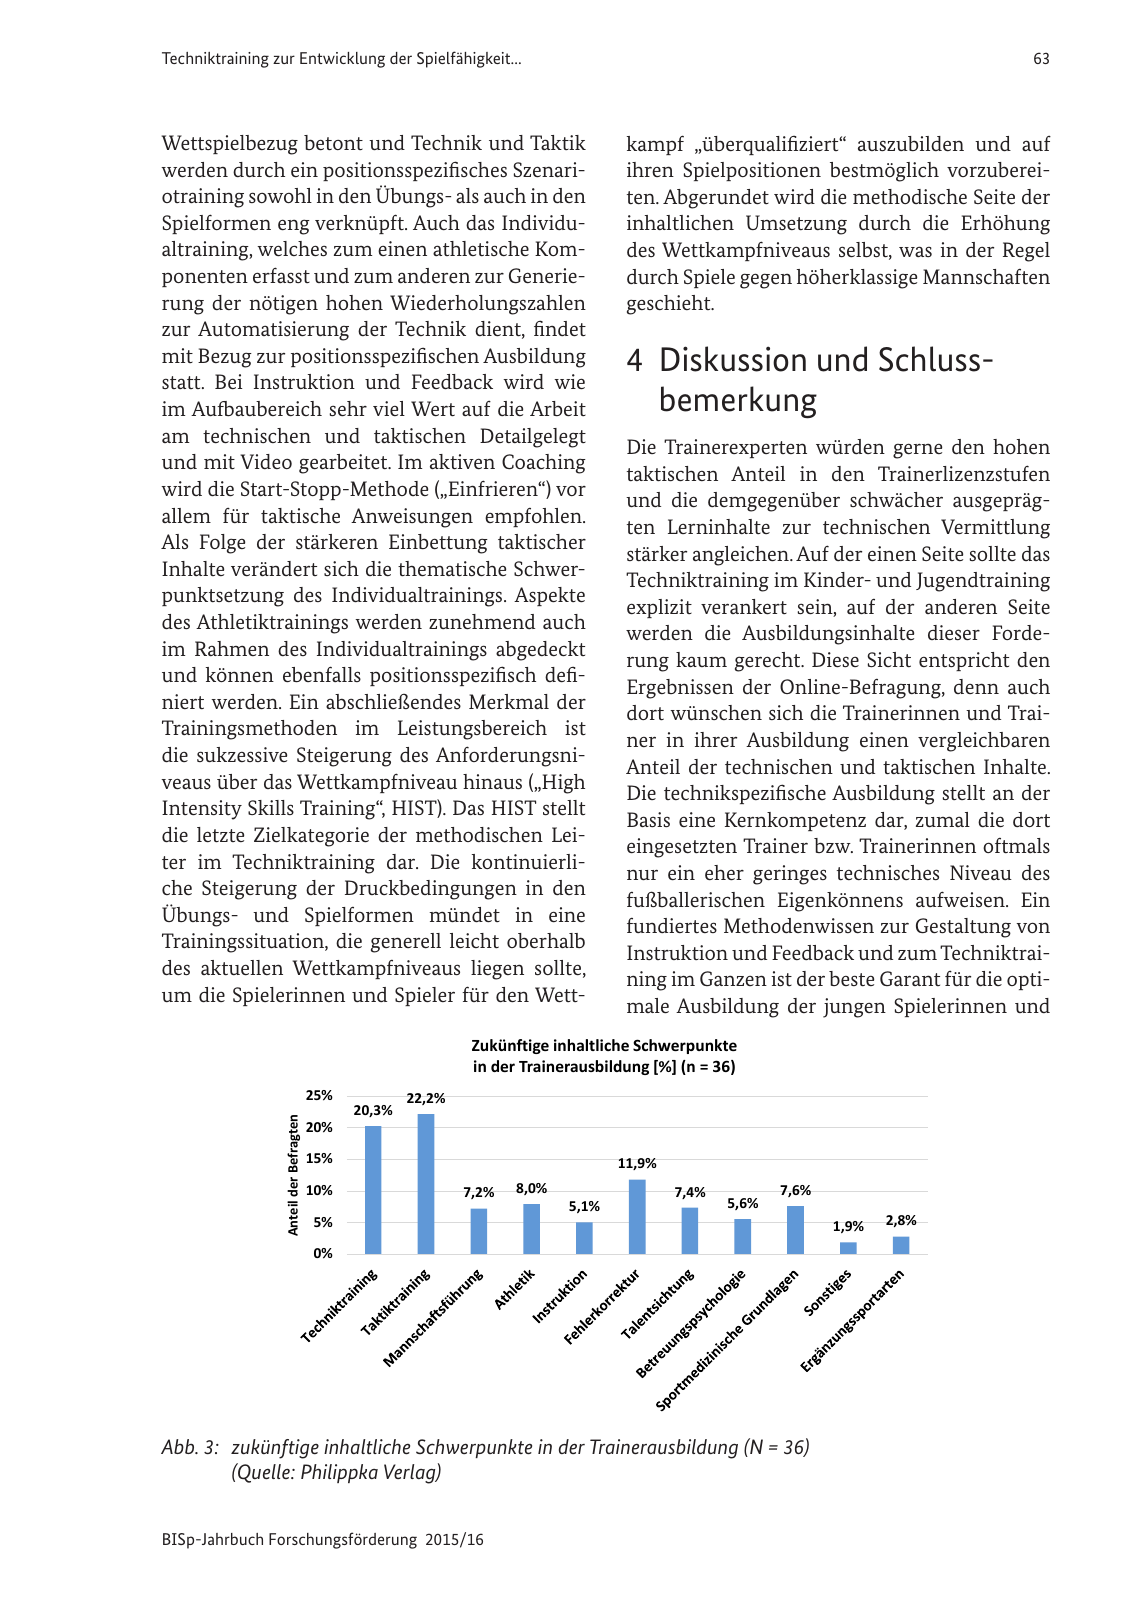 Vorschau BISp-Jahrbuch Forschungsförderung 2015/16 Seite 65